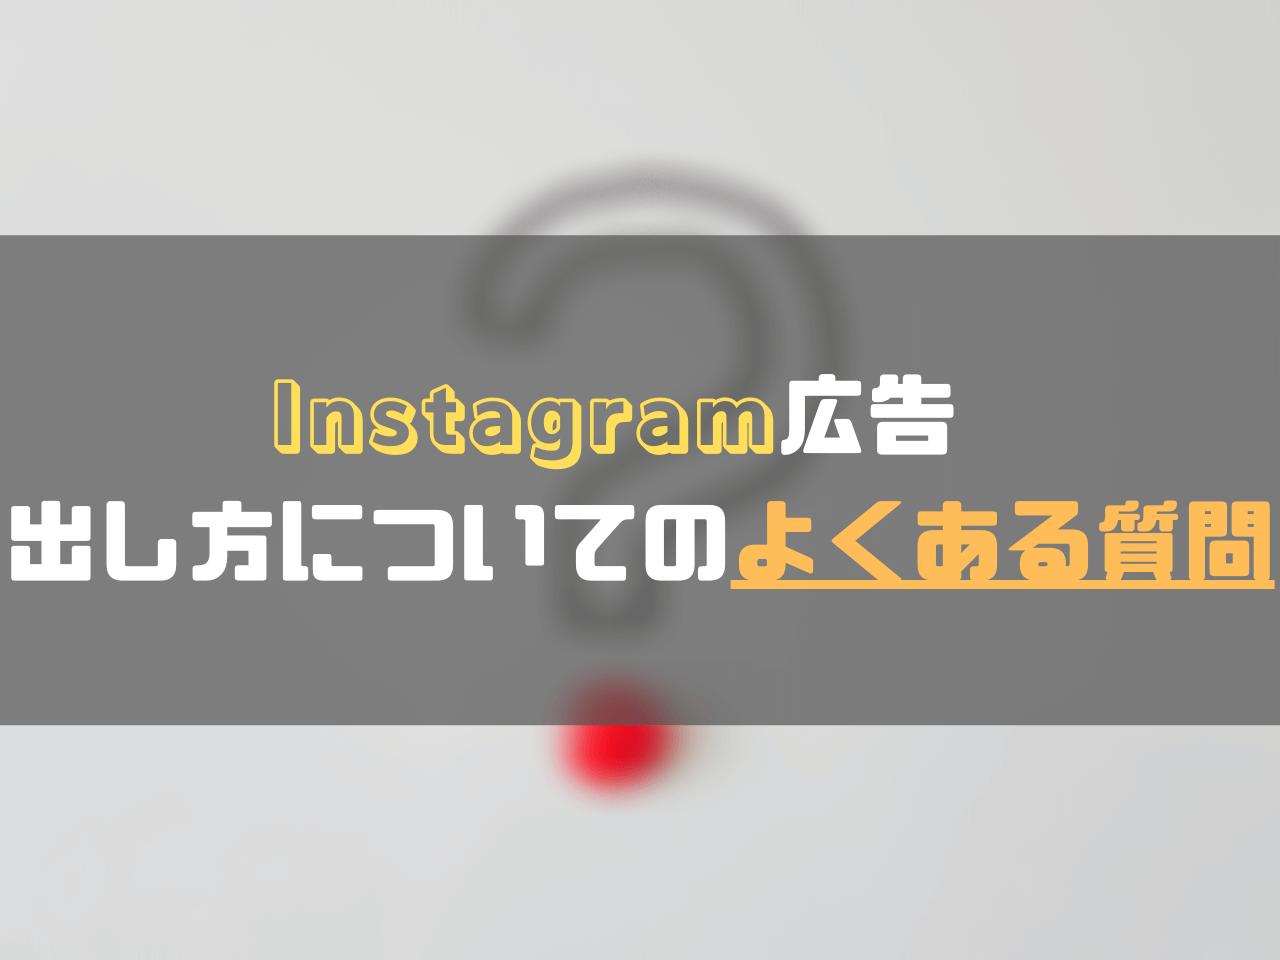 Instagram広告_出し方_InInstagram広告の出し方についてのよくある質問